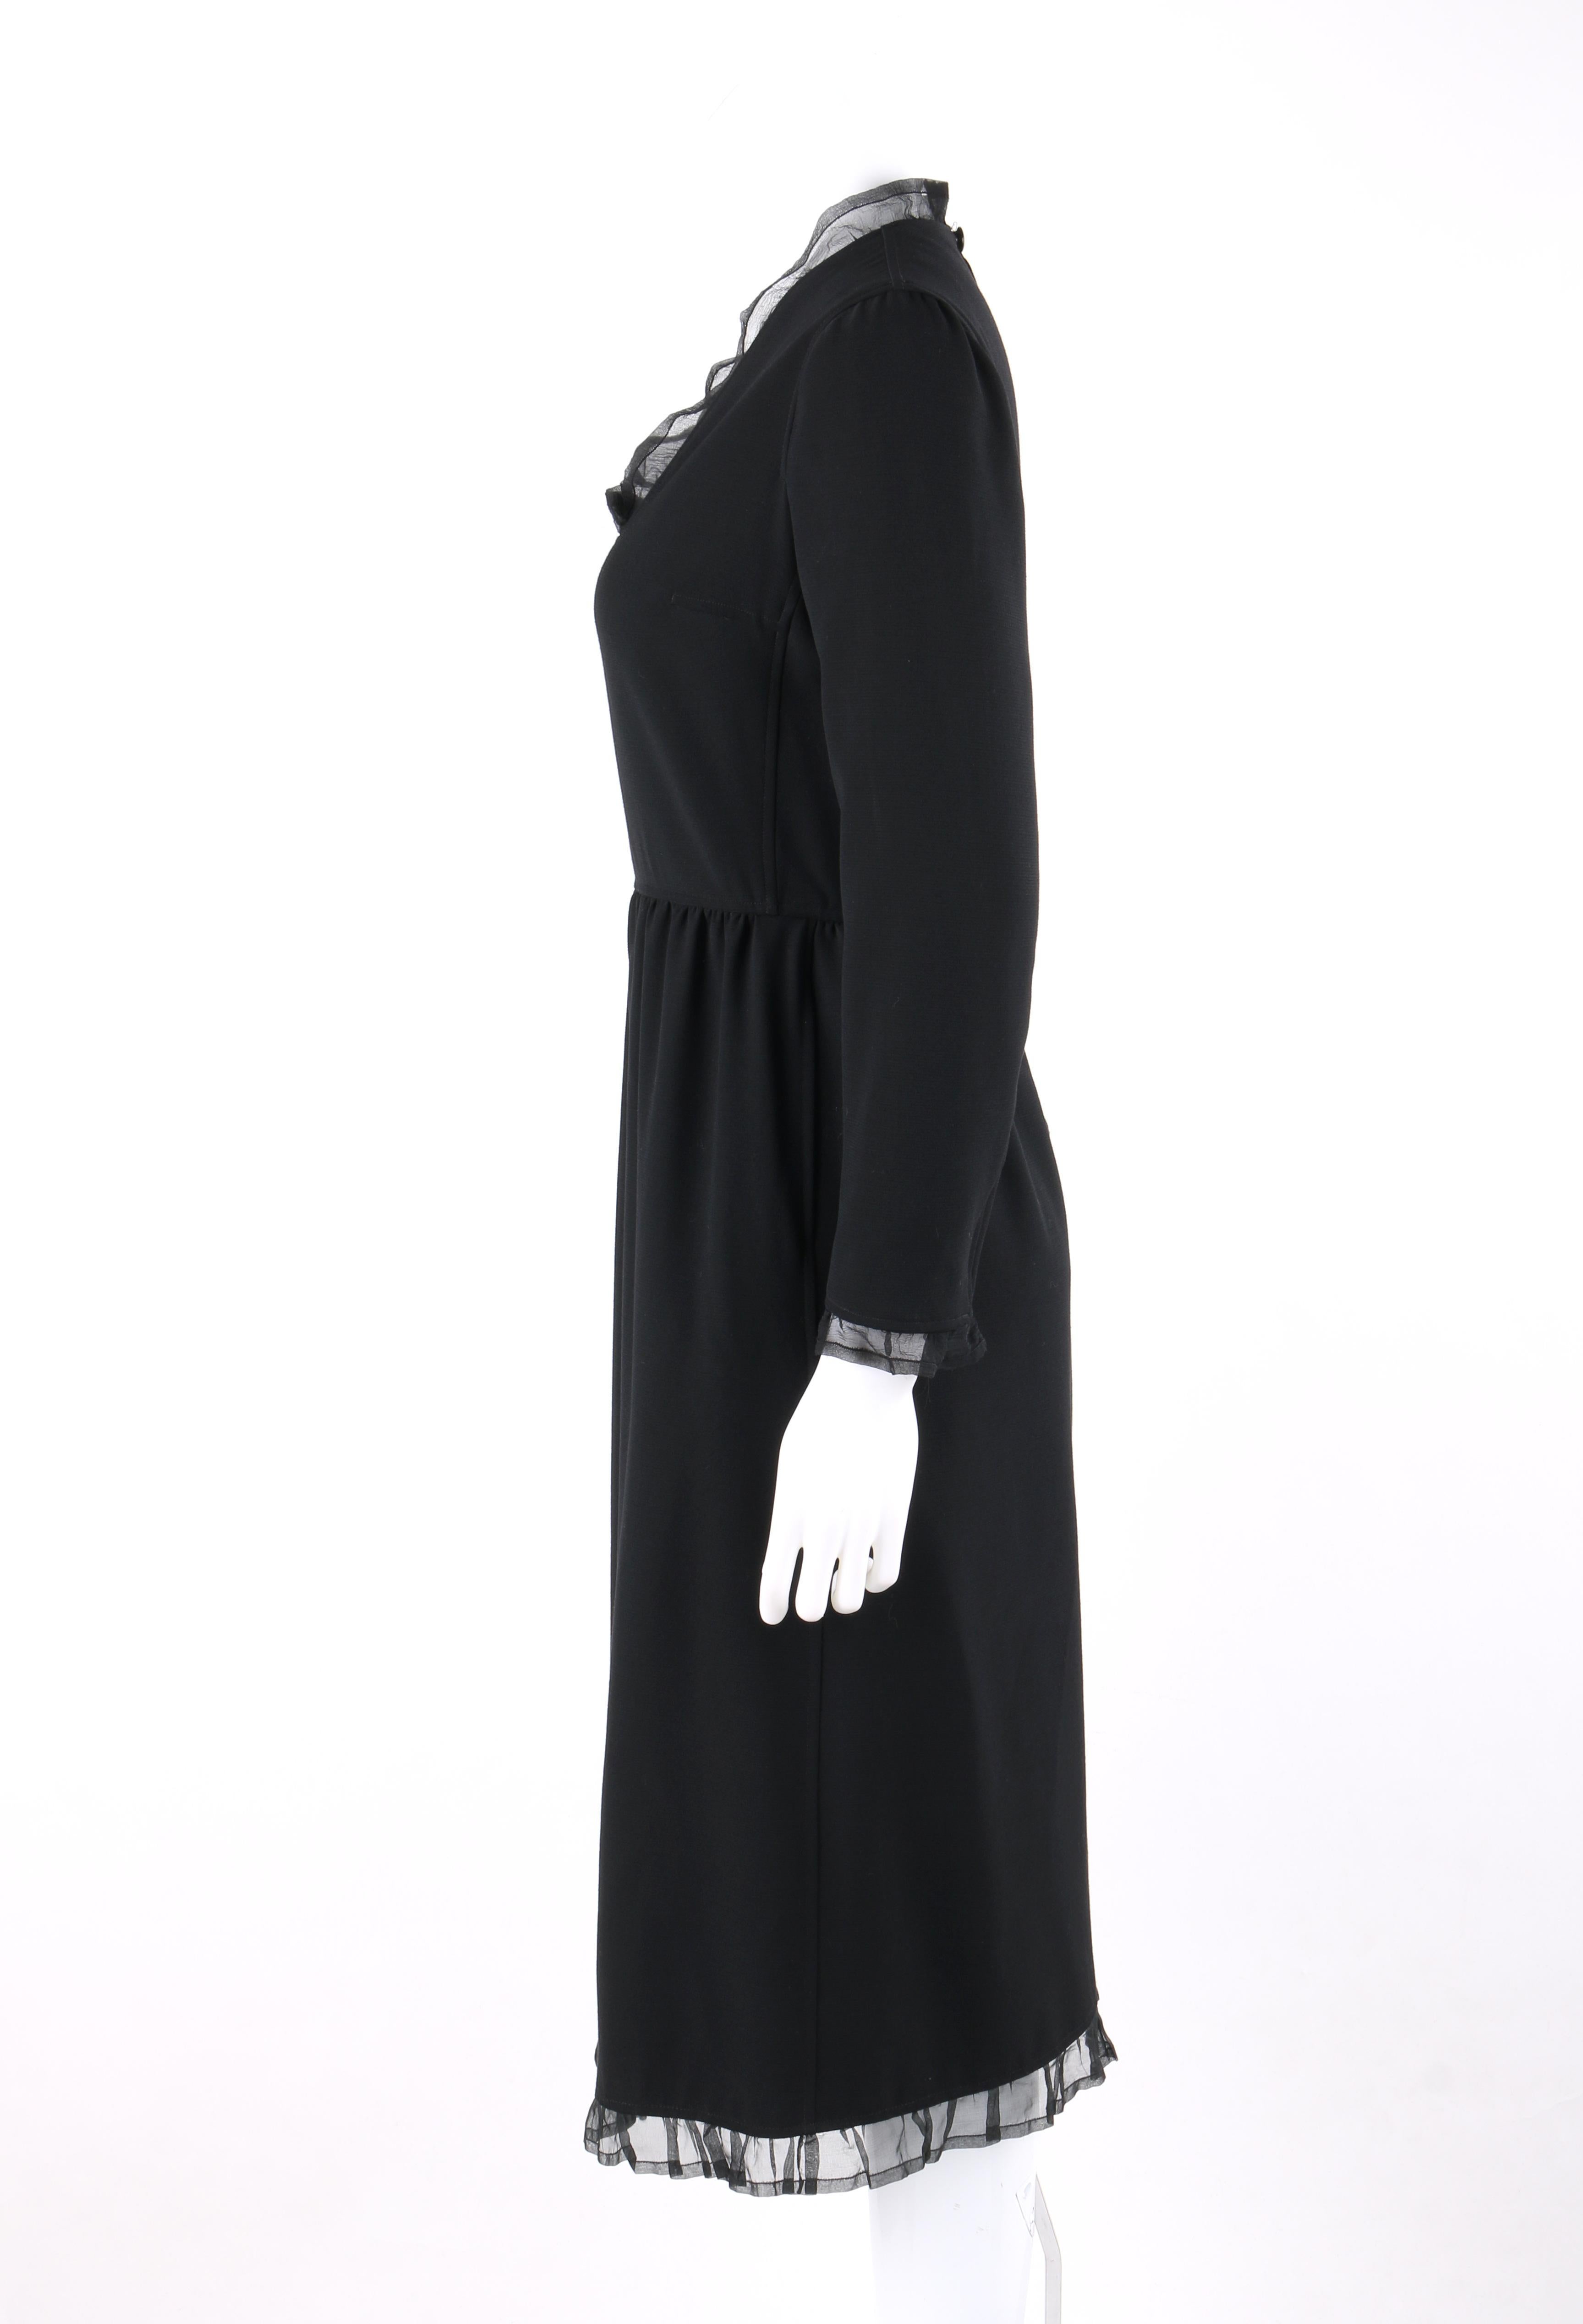 COURREGES Paris c.1970's Black Silk Ruffle Square Scoop Neck Midi Dress 1